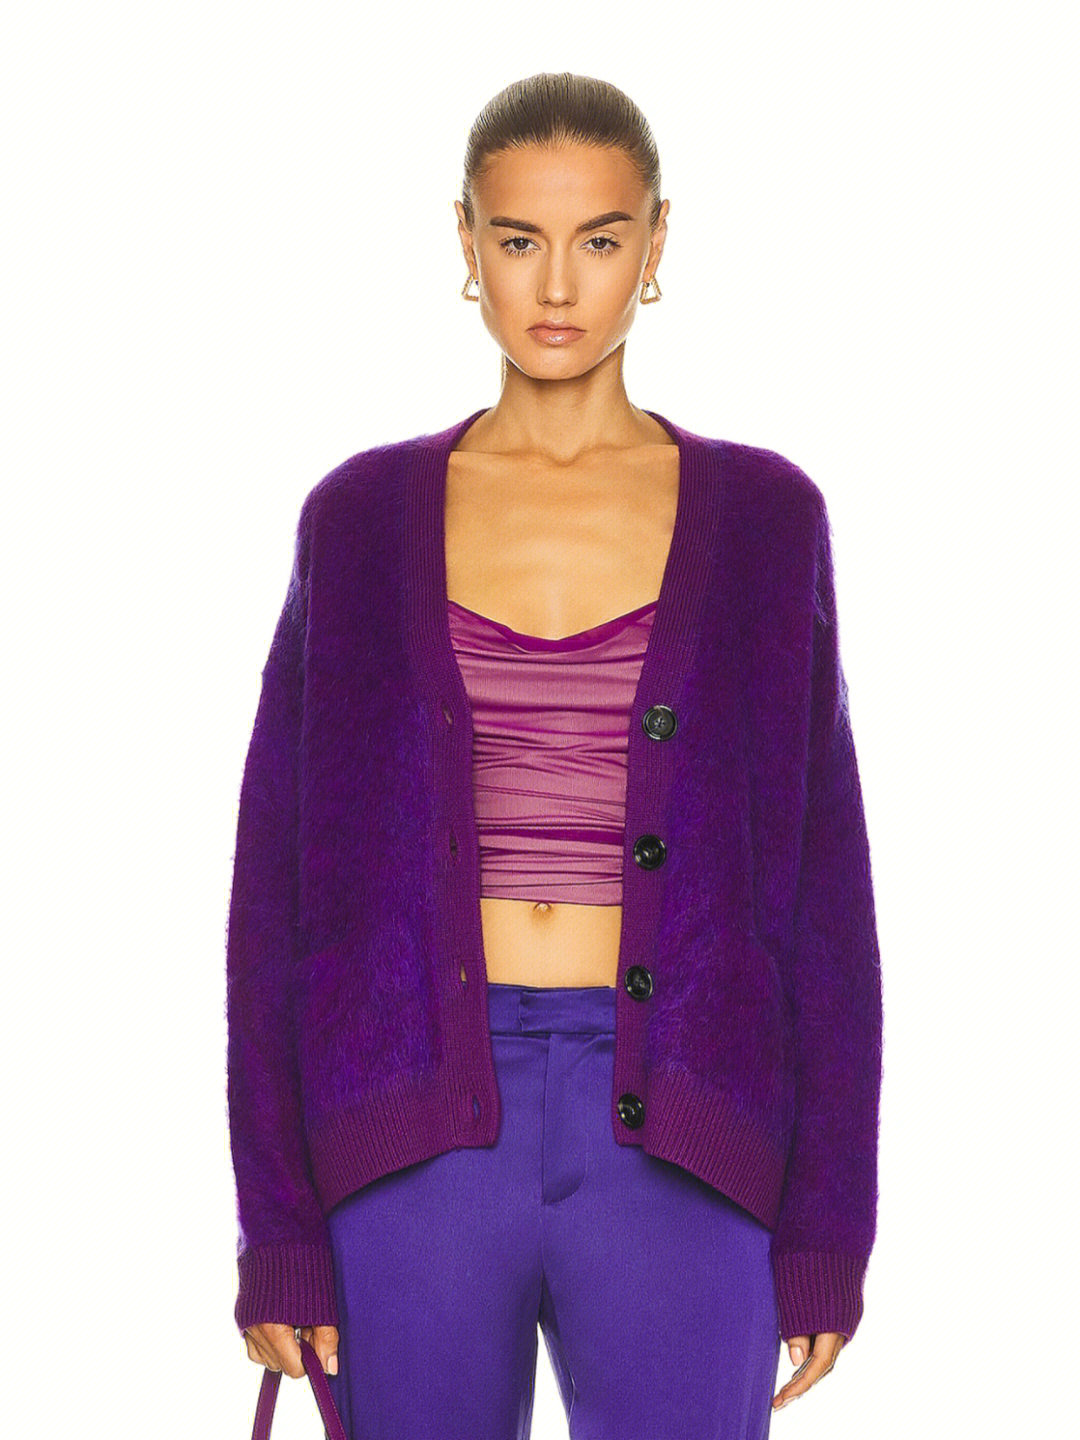 acne studios最经典马海毛开衫外套新款紫色神秘梦幻!